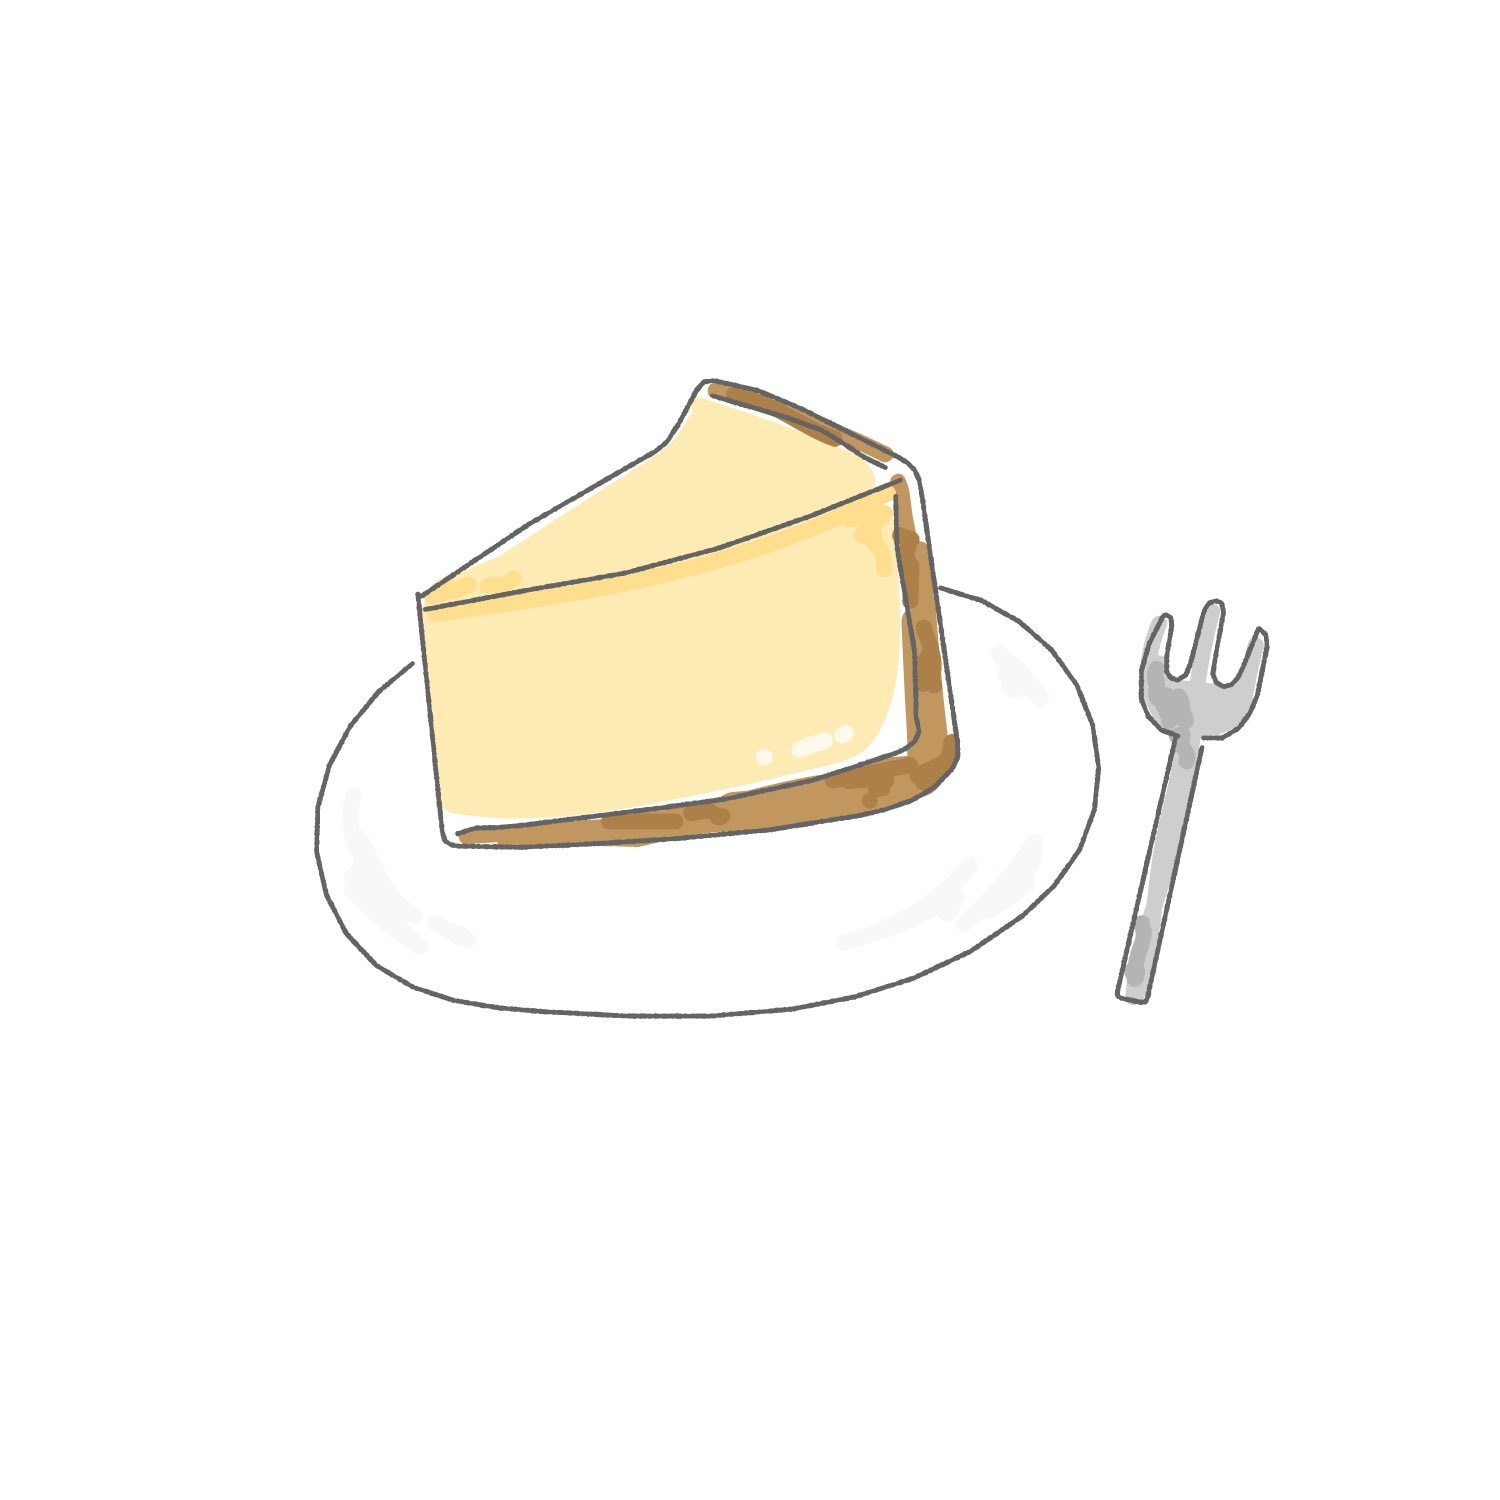 いち チーズケーキ イラストのテイスト変えてみた イラスト ゆるいイラスト 1日1絵 イラスト好きさんと繋がりたい イラスト好きな人と繋がりたい イラスト初心者 チーズケーキ ケーキ T Co Jxr6x3i7st Twitter